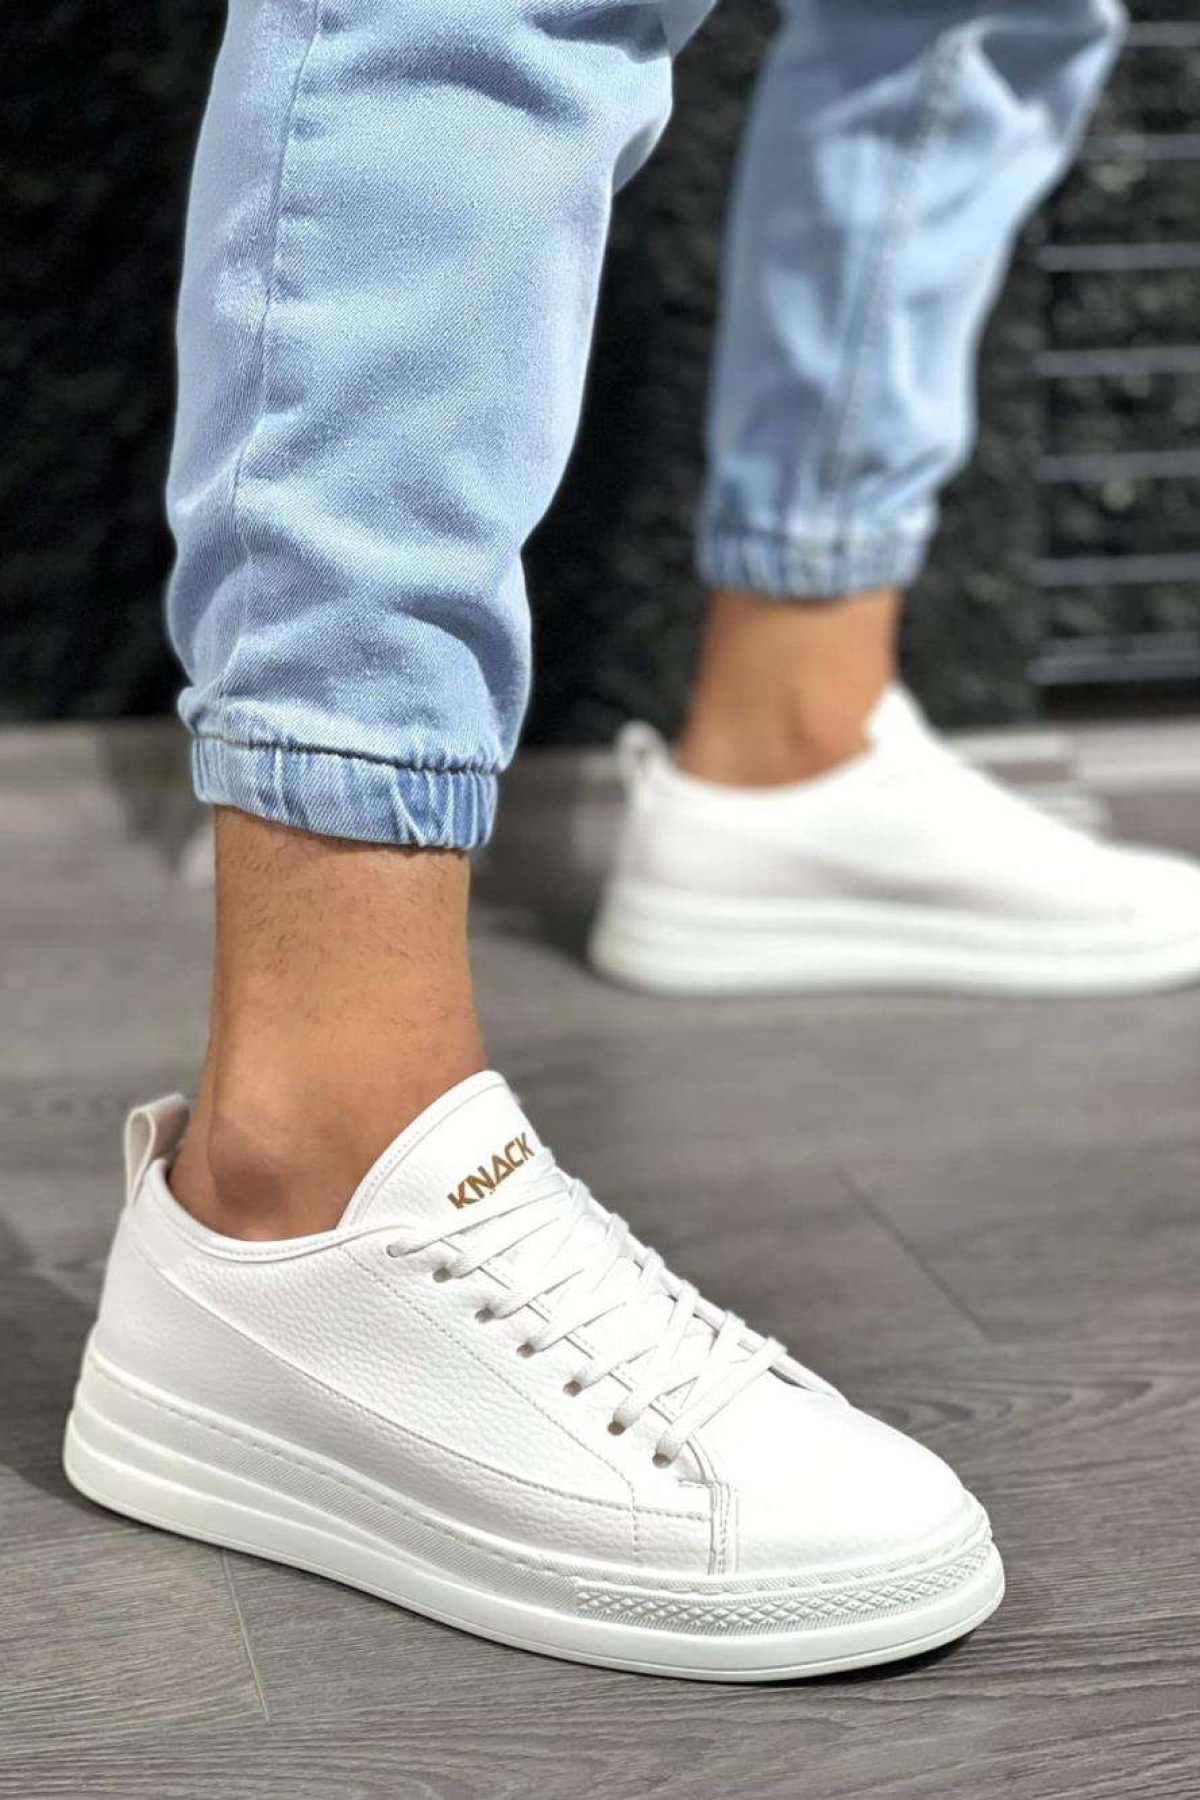 Kocmen Sneakers Ayakkabı 010 Beyaz